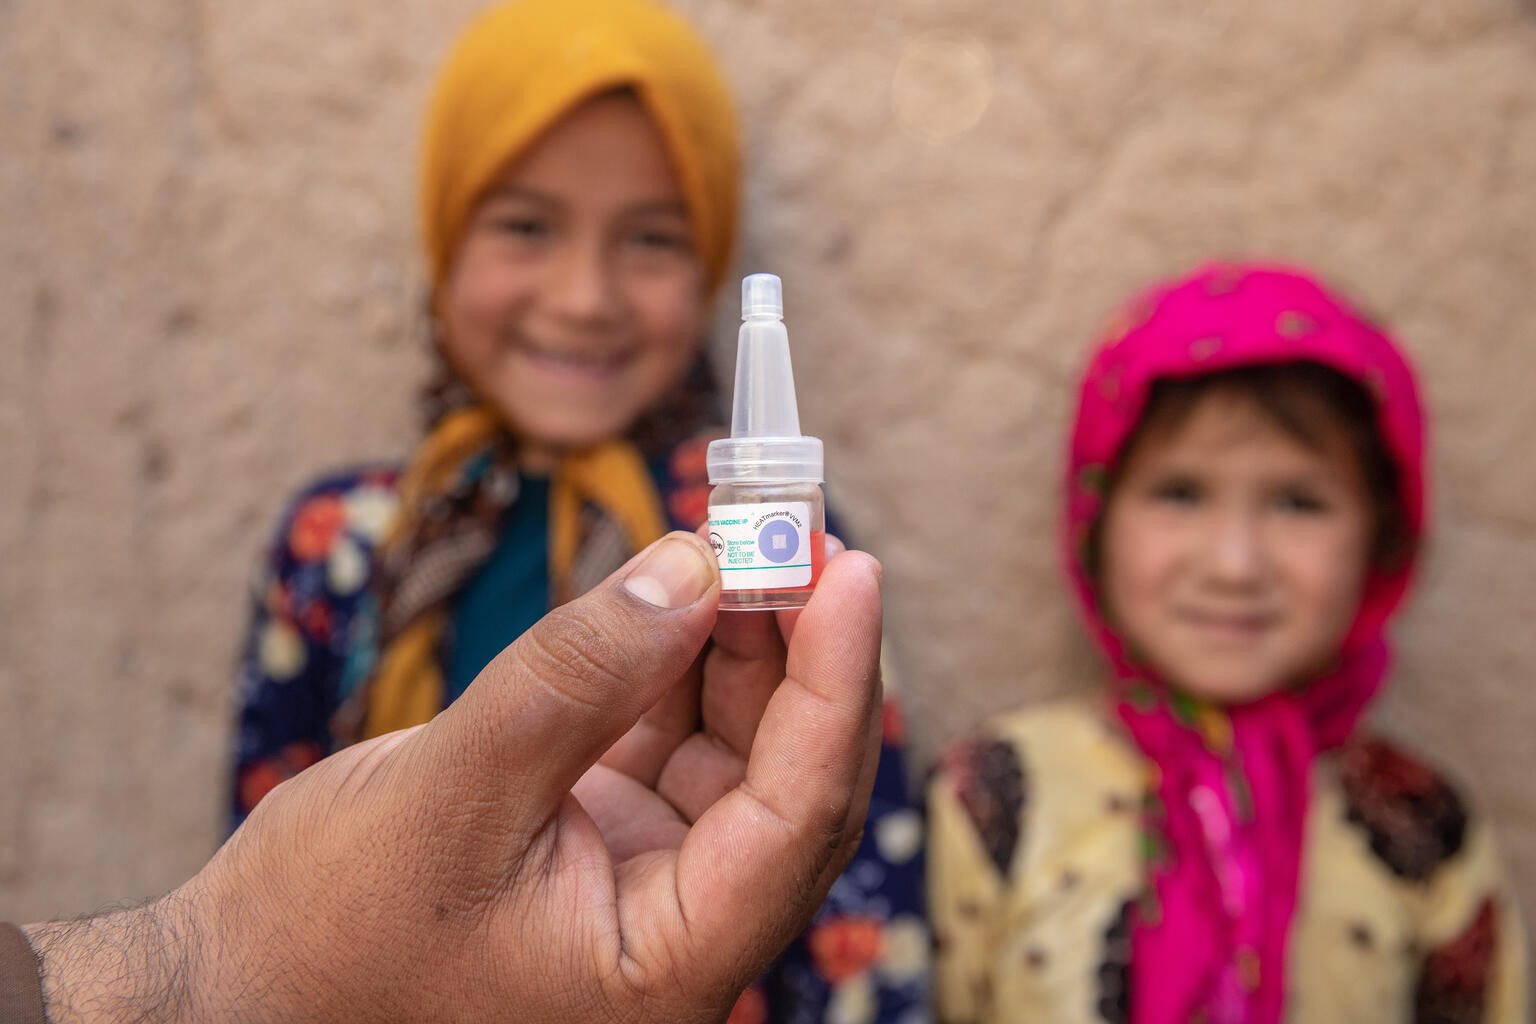 A gyermekvédelmi szervezet igyekszik gyógyszereket és alapvető higiéniai készítményeket juttatni az afgán gyerekeknek